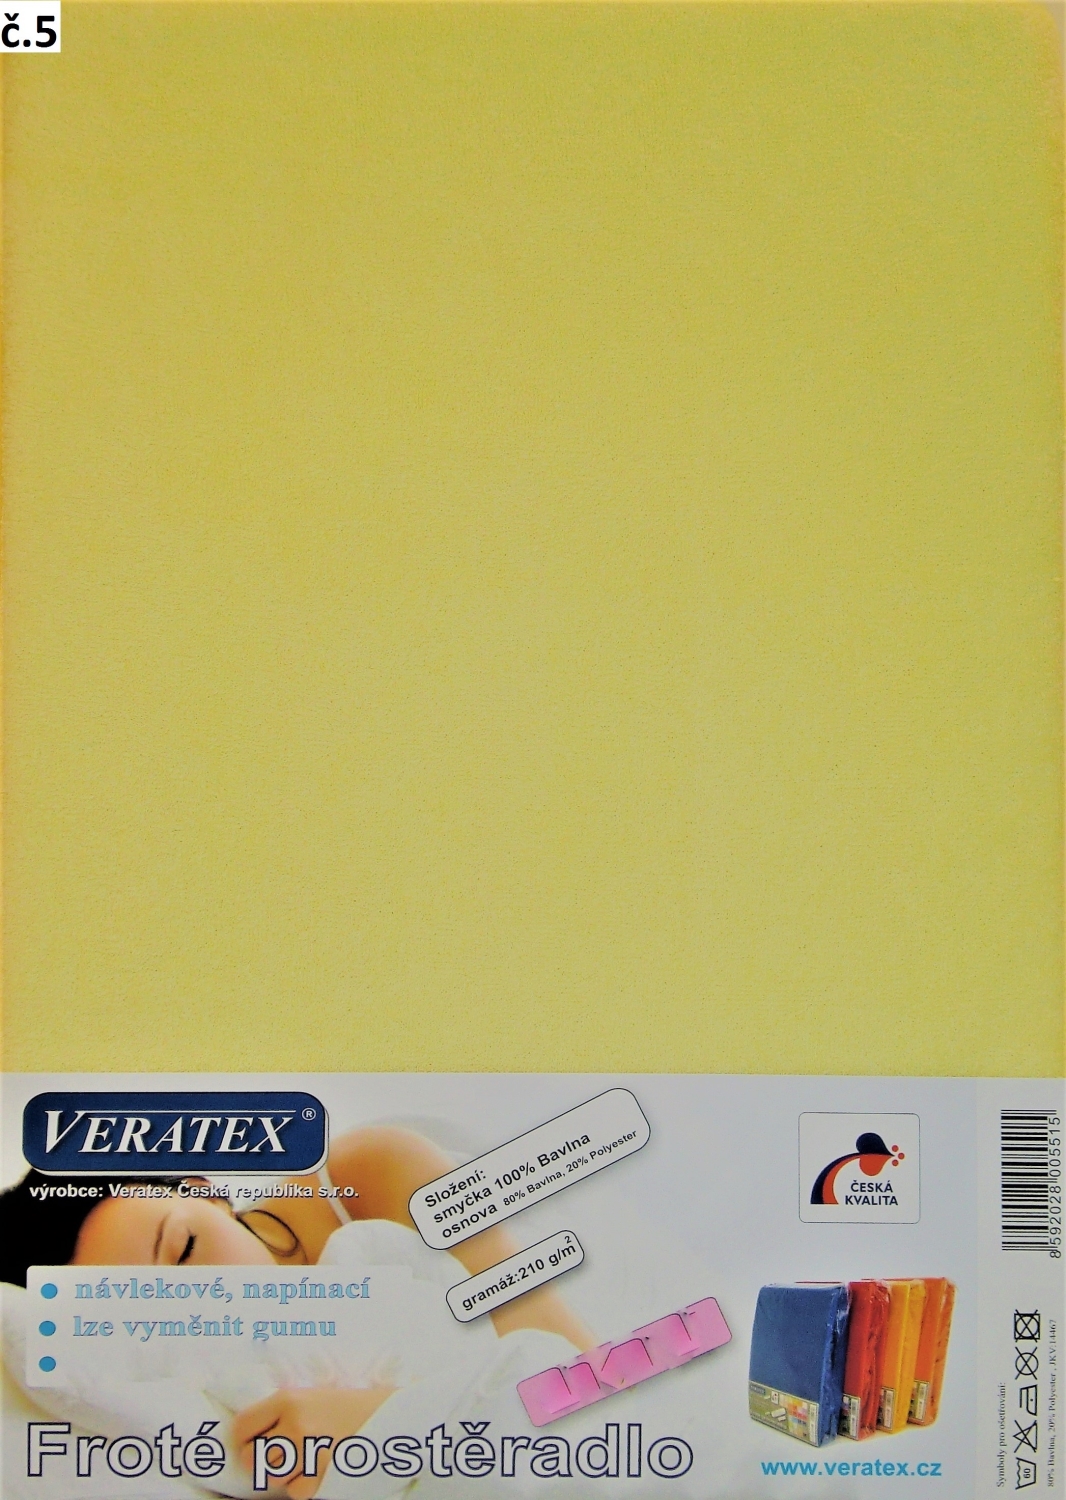 Veratex Froté prostěradlo jednolůžko 100x200/25cm (č. 5-sv.žluté)